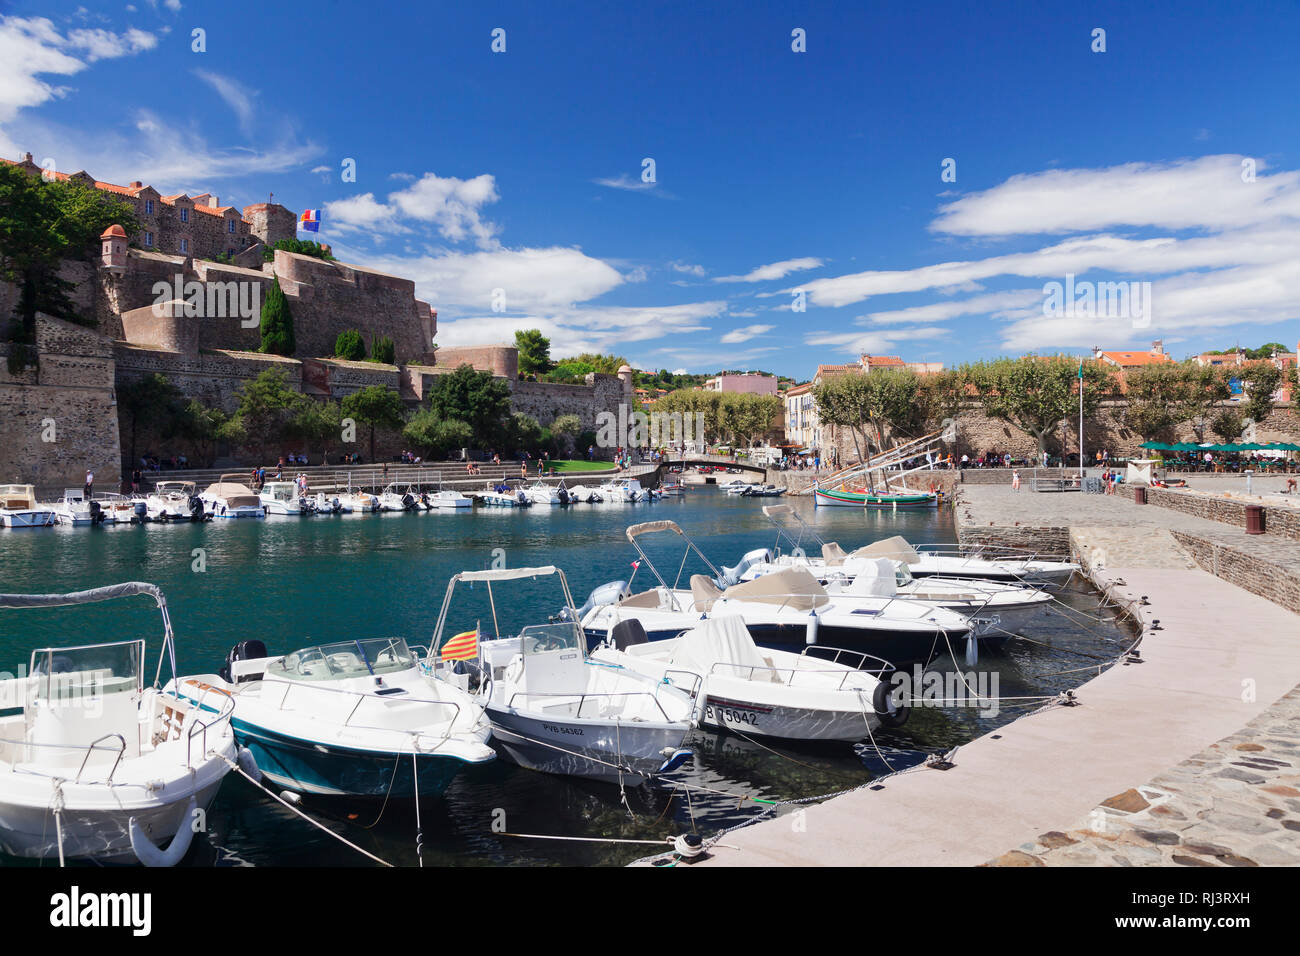 Chateau Royal, Hafen von Collioure, Pyrenäen, Languedoc-Roussillon, Südfrankreich, Frankreich Foto de stock